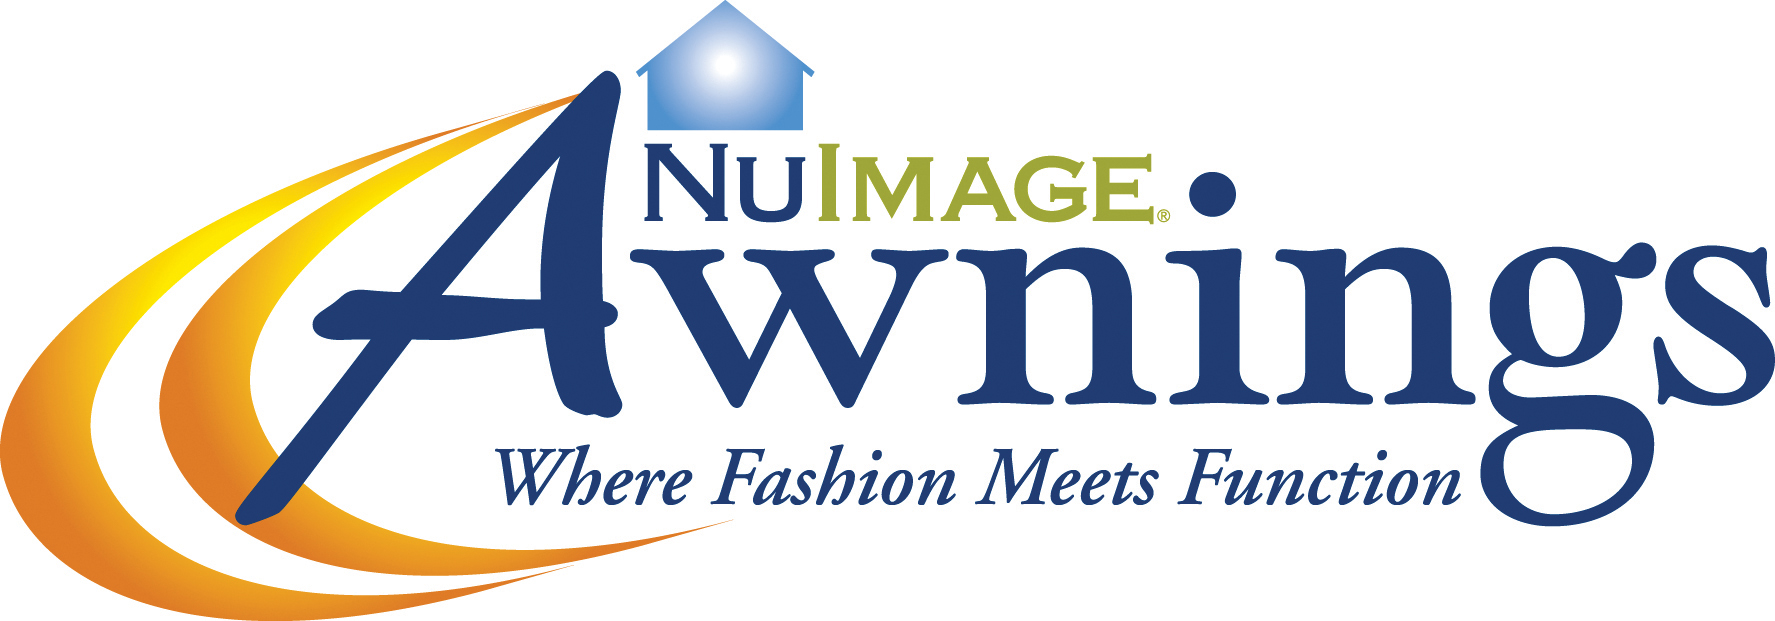 Nu Image Awnings Logo